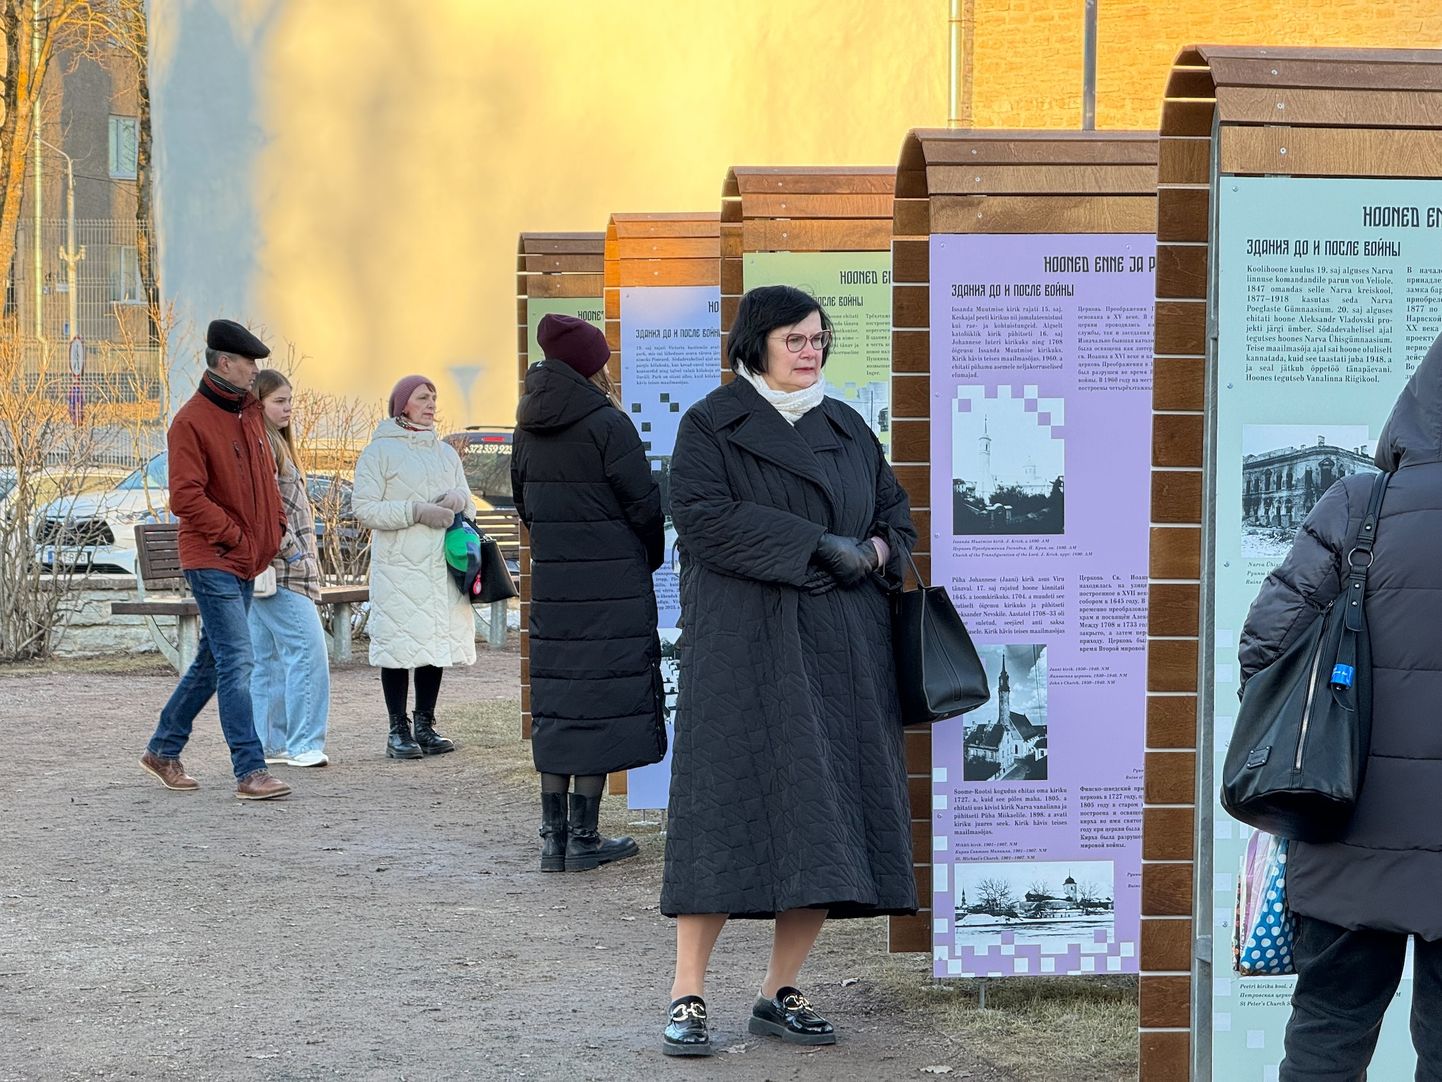 Выставка Нарвского музея "Нарва 44", посвященная мартовской бомбардировке города, открылась под открытым небом в Замковом парке.